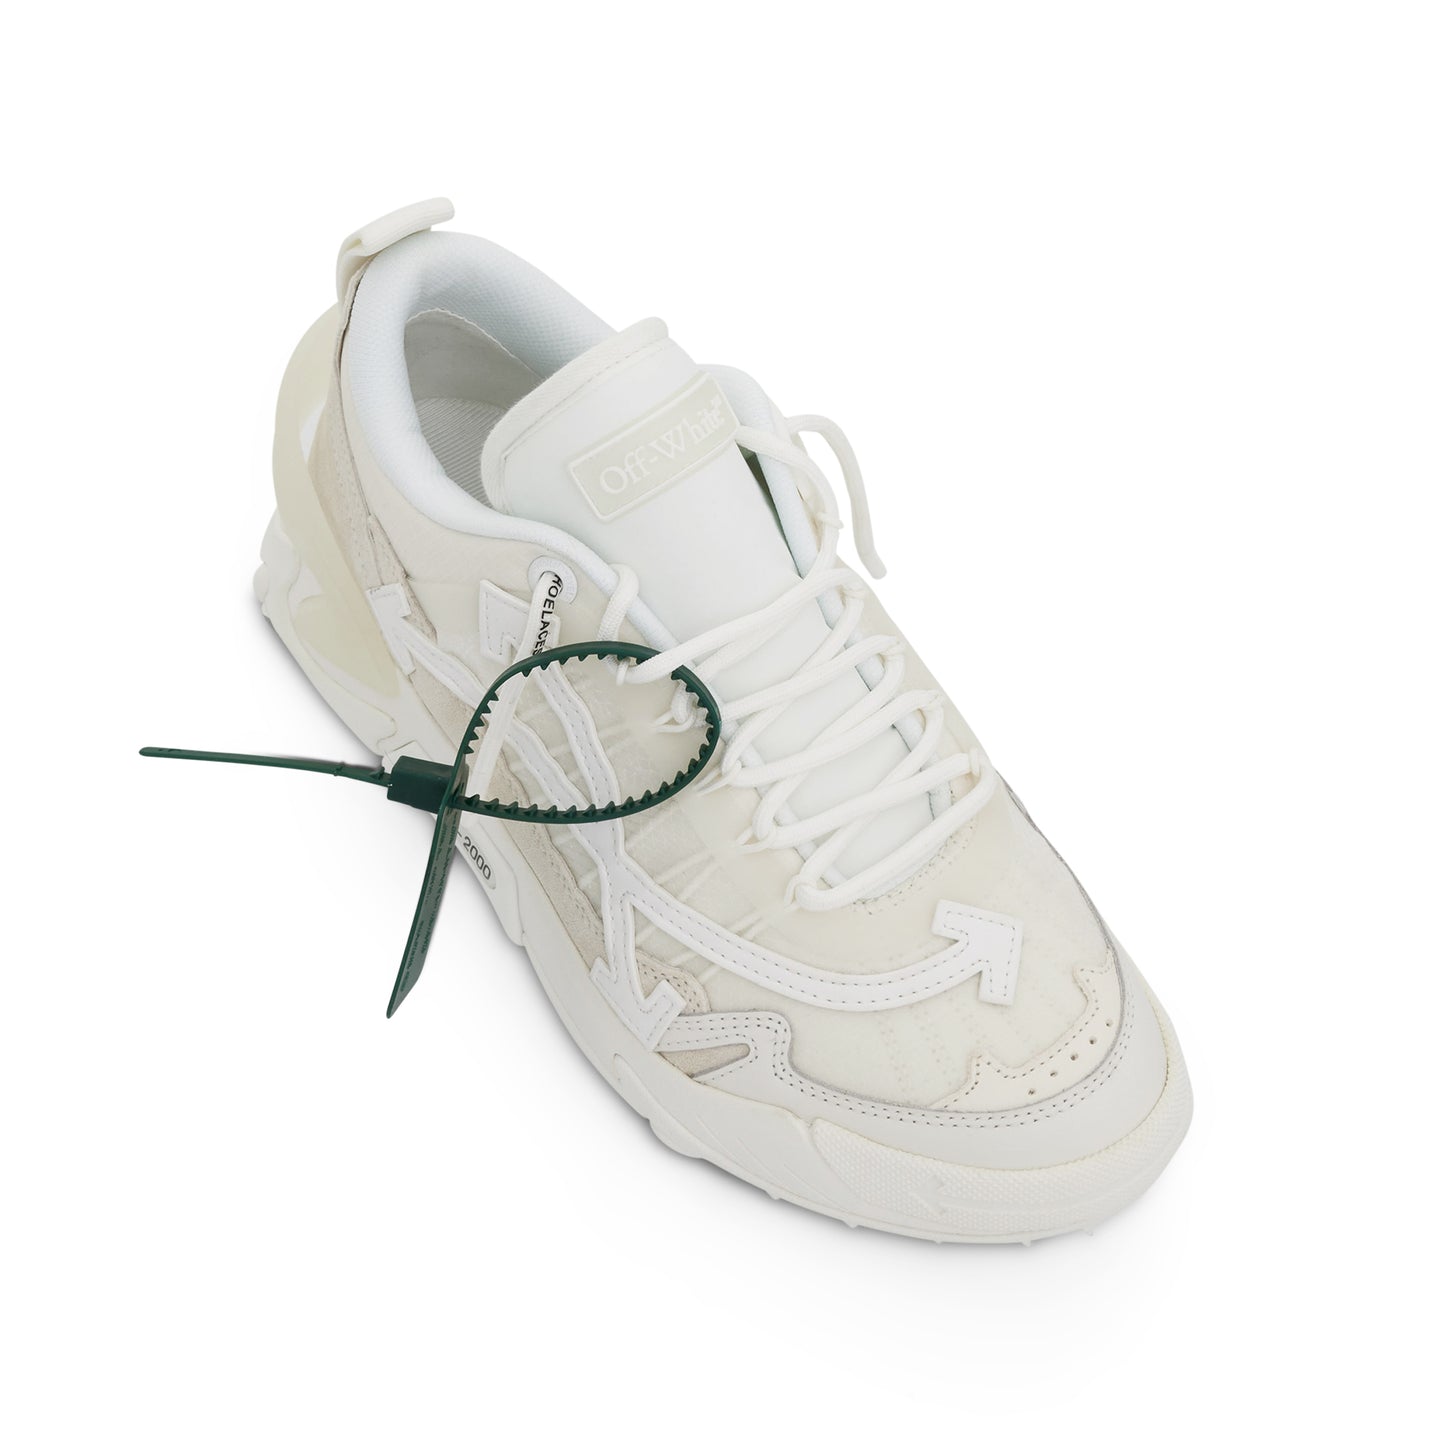 ODSY 2000 Sneaker In Colour White